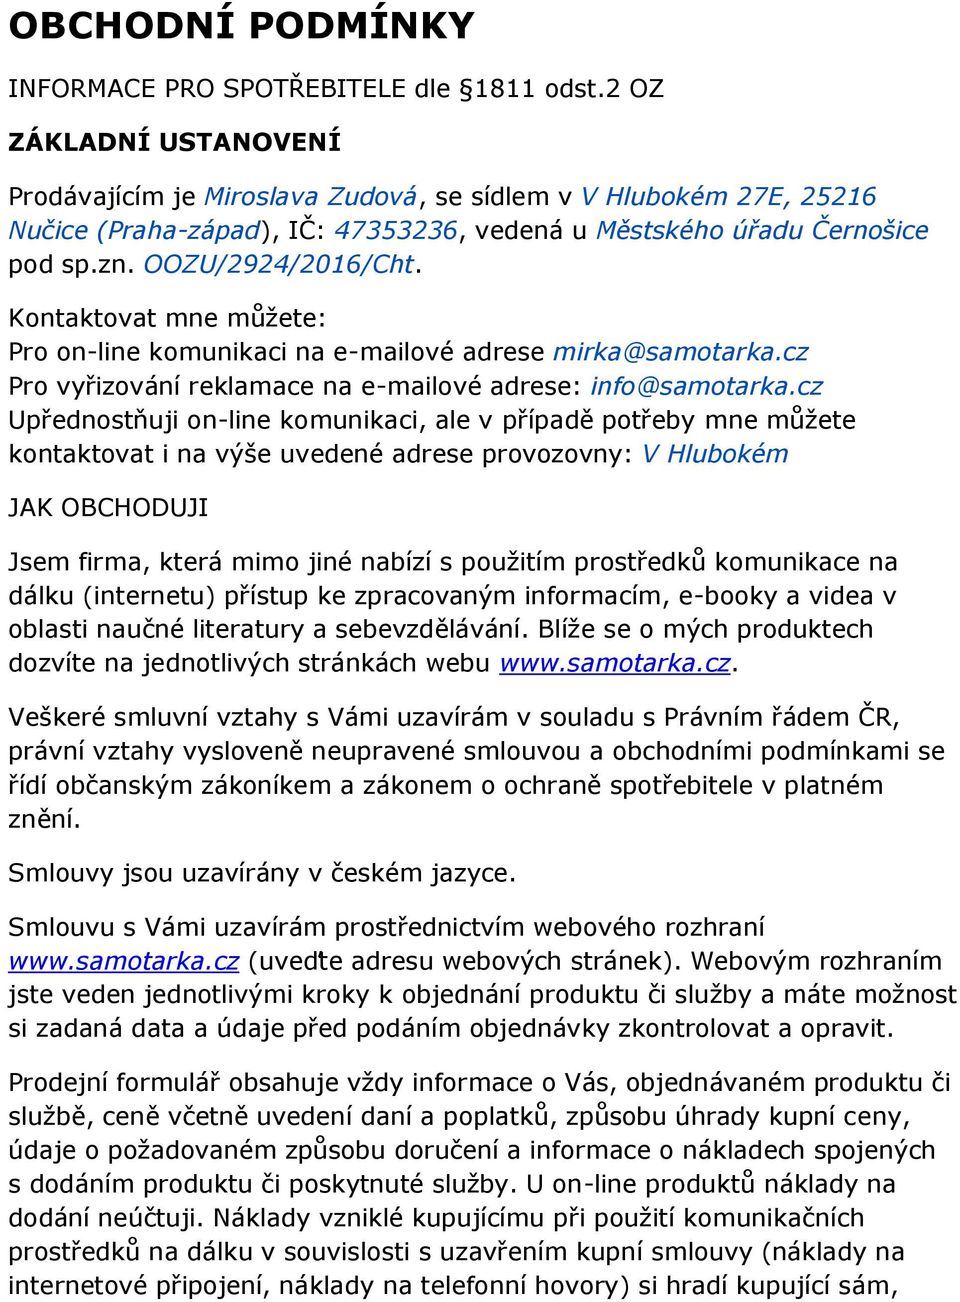 Kontaktovat mne můžete: Pro on-line komunikaci na e-mailové adrese mirka@samotarka.cz Pro vyřizování reklamace na e-mailové adrese: info@samotarka.